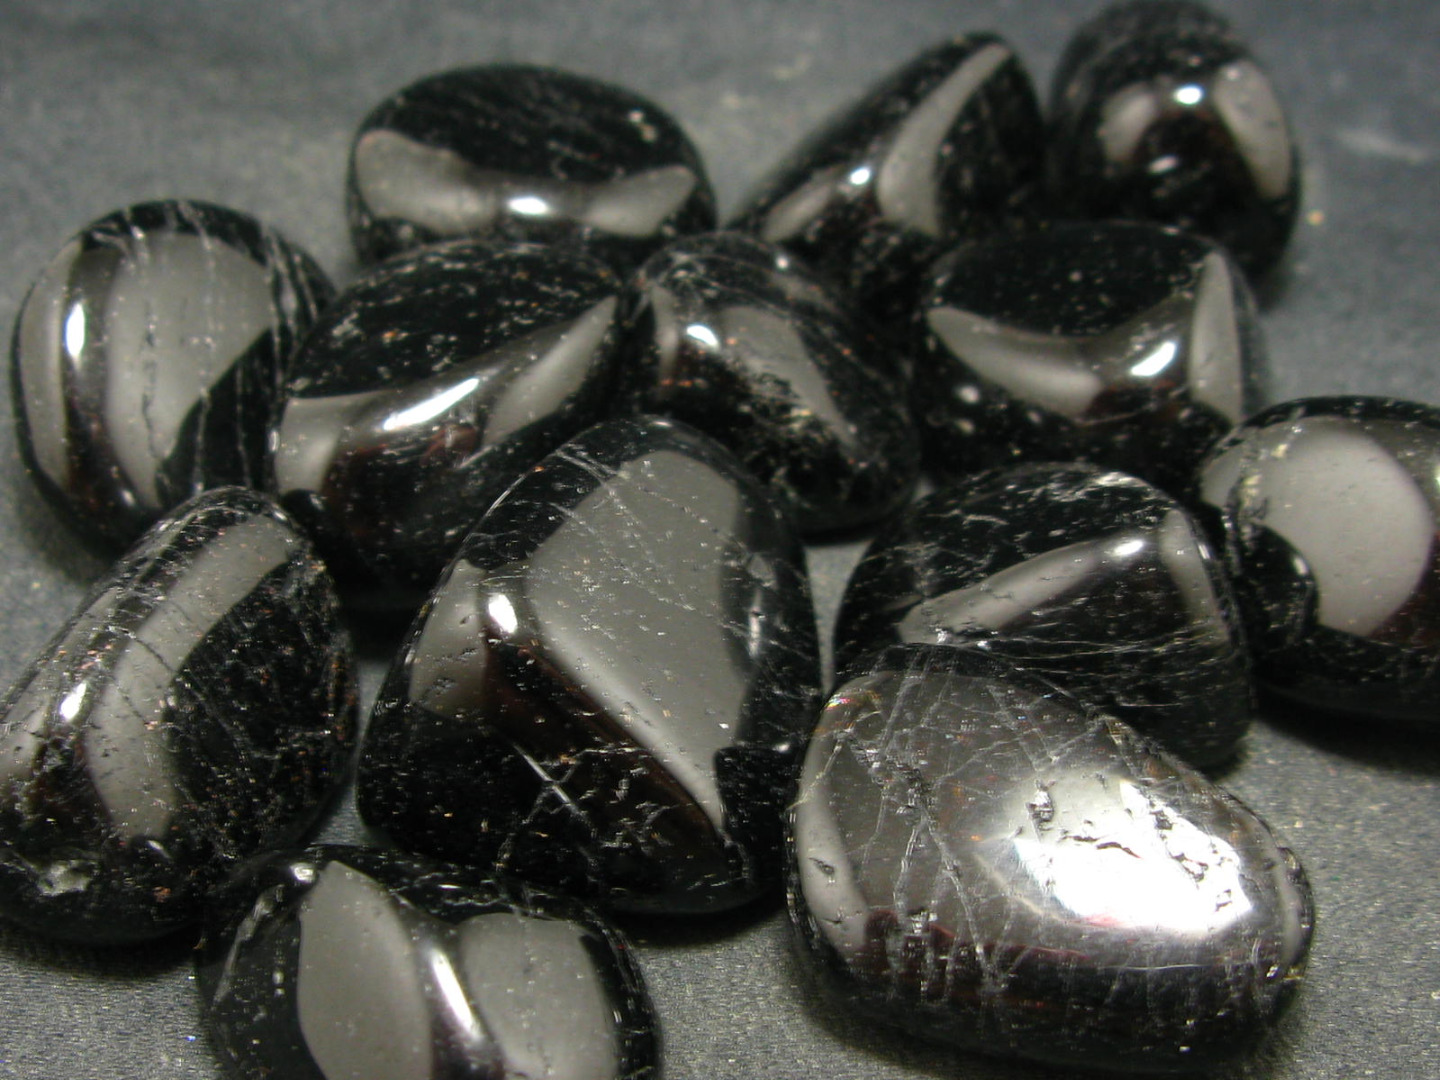 đá sapphire đen cho người sinh năm 2003